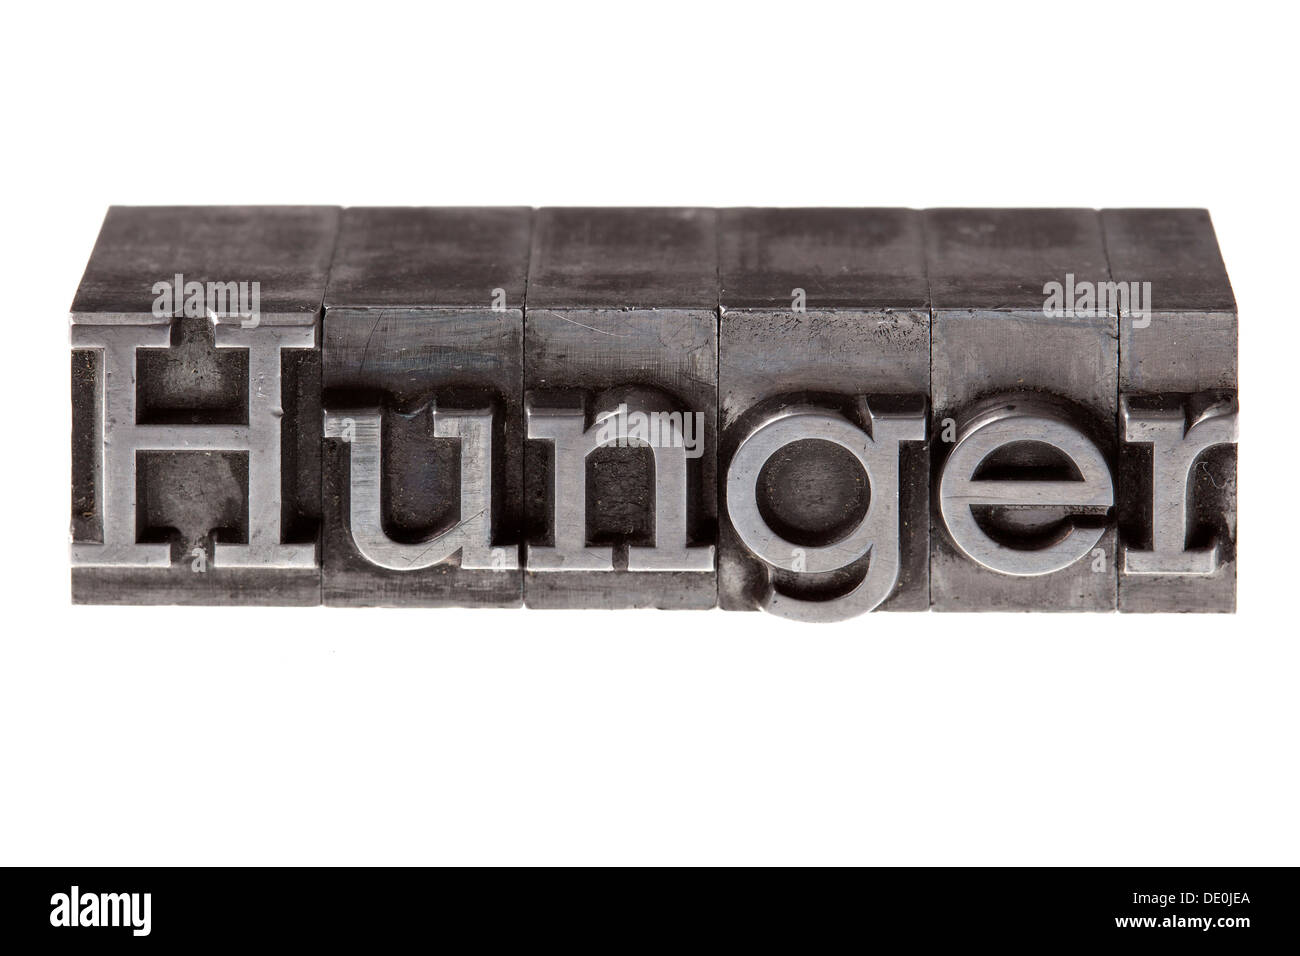 Cable viejo letras que forman la palabra "hambre" Foto de stock